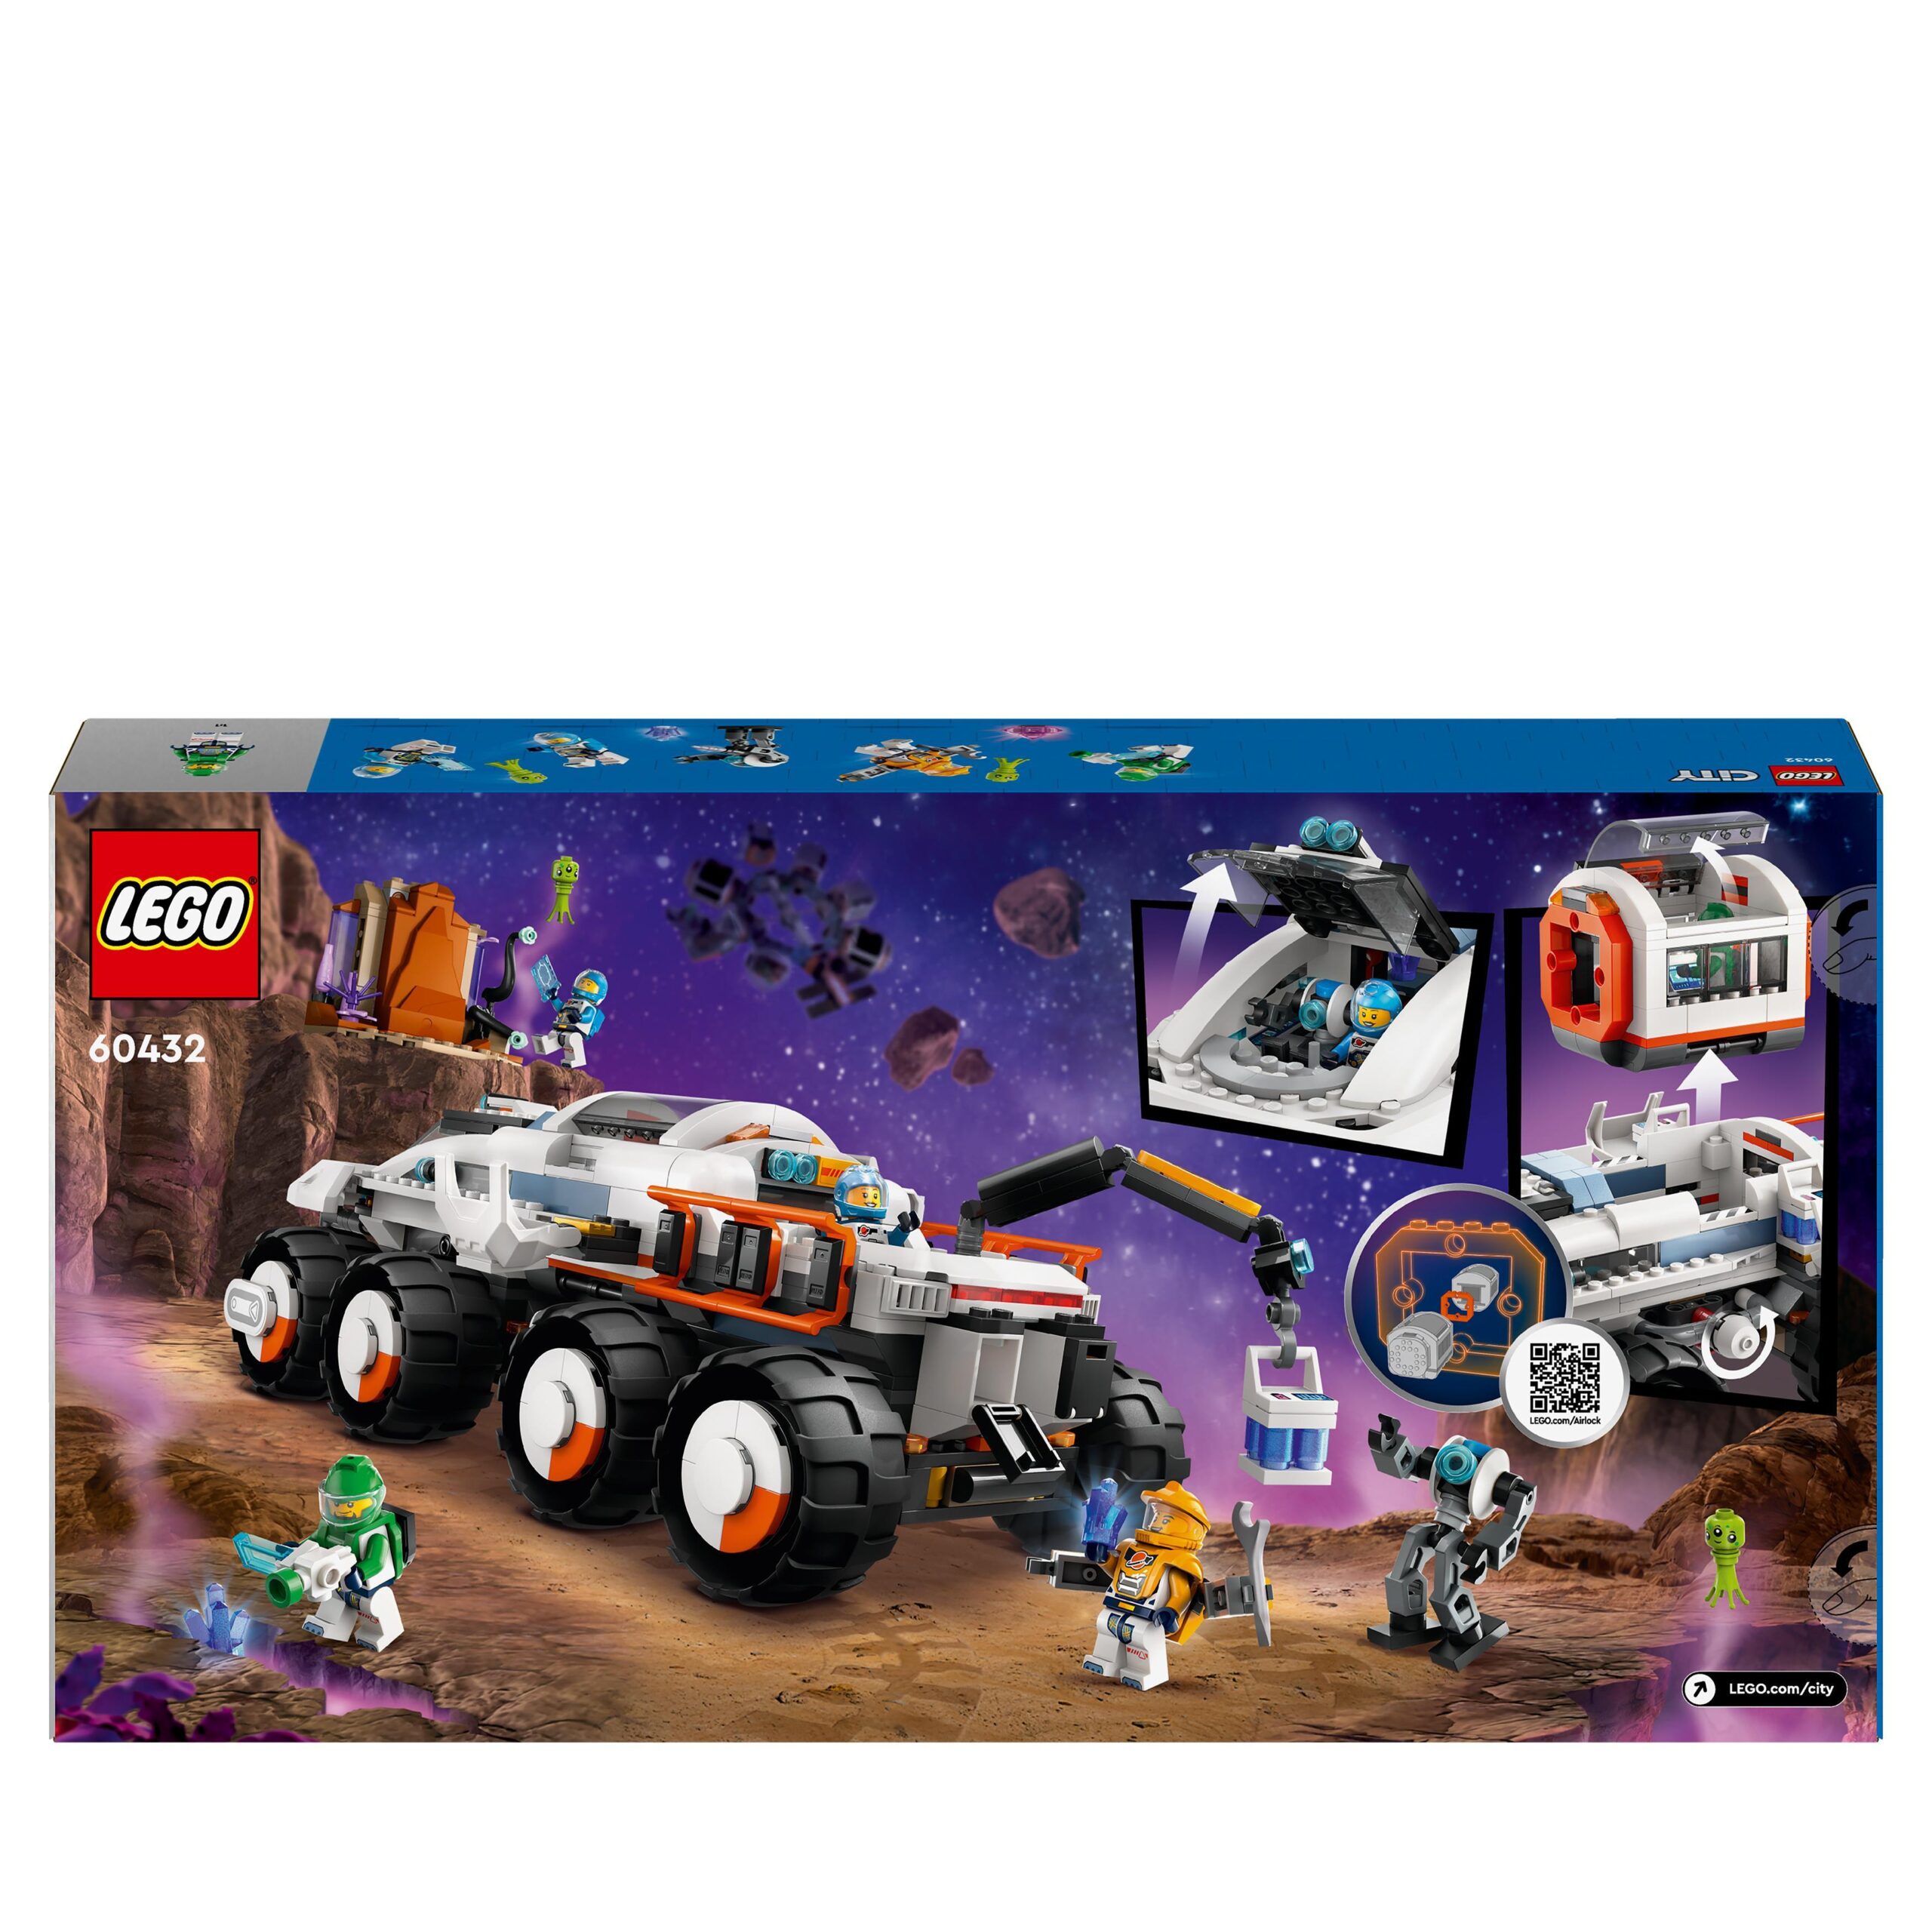 Lego city 60432 rover di comando e gru di carico, gioco spaziale per bambini 7+ con camion giocattolo, 4 minifigure e robot - LEGO CITY